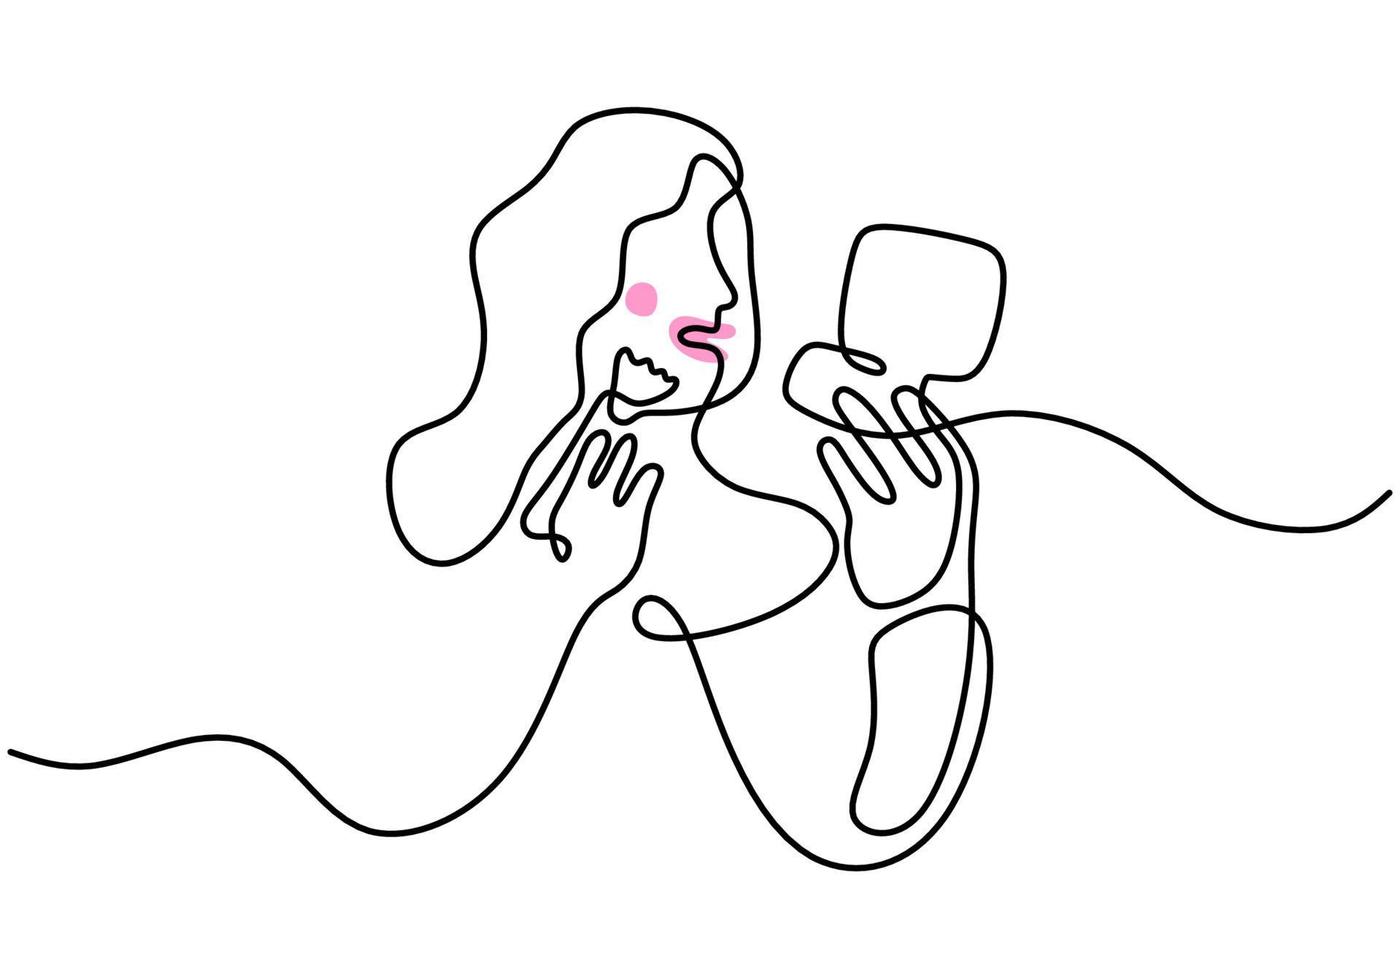 desenho de linha única contínua do rosto de uma mulher feliz usando pó-de-rosa com espelho grande. mulher compõem o tema uma linha isolada no fundo branco. vetor